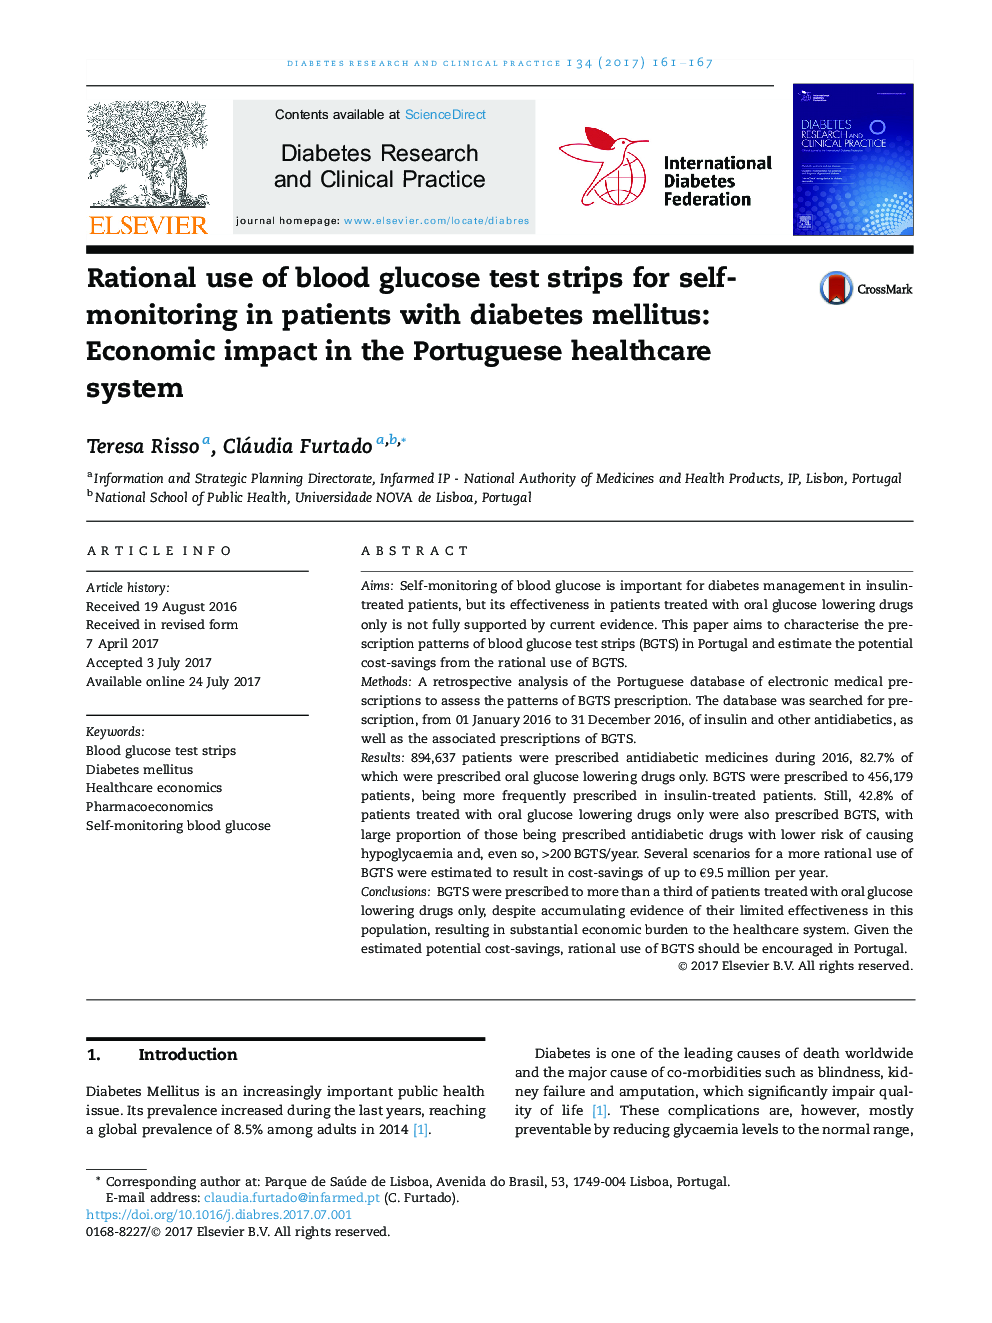 استفاده منطقی از نوارهای تست گلوکز خون برای خودمراقبتی در بیماران مبتلا به دیابت: اثرات اقتصادی در سیستم مراقبت بهداشتی پرتغال 